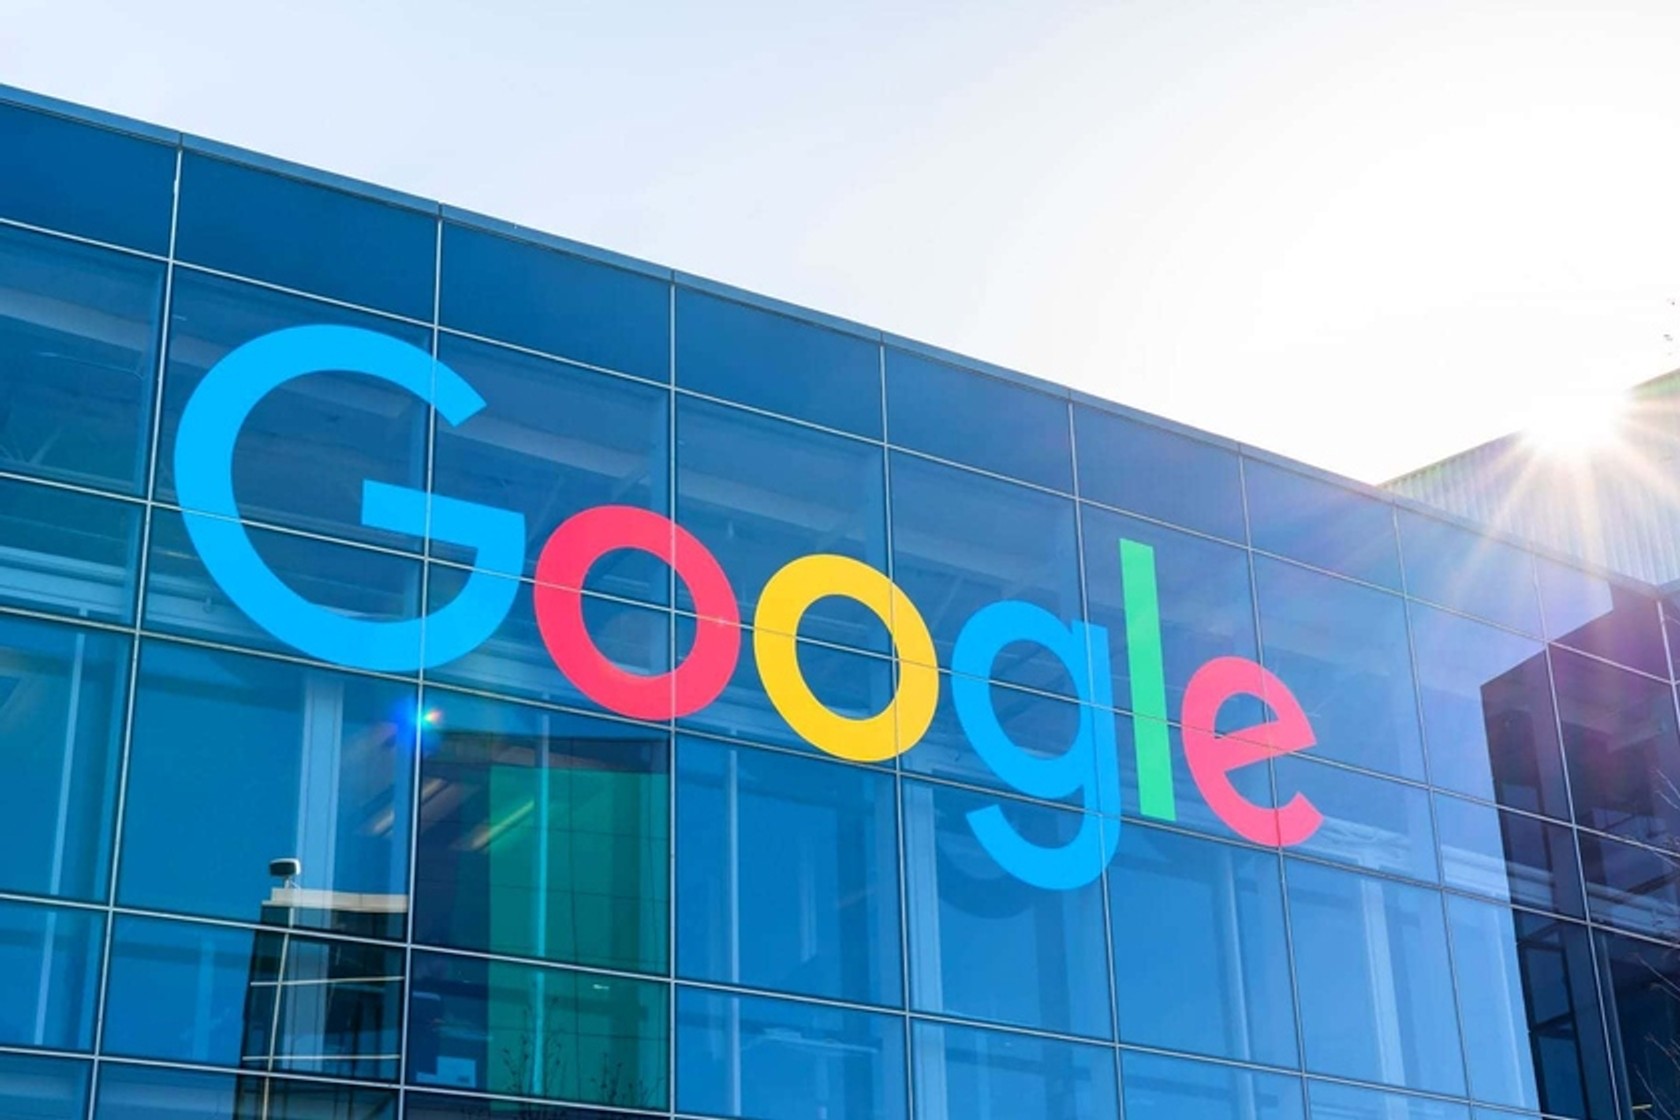 Єврокомісія почала антимонопольне розслідування проти Google. Компанію звинувачують в тому, що вона не дає конкурентам розміщувати рекламу